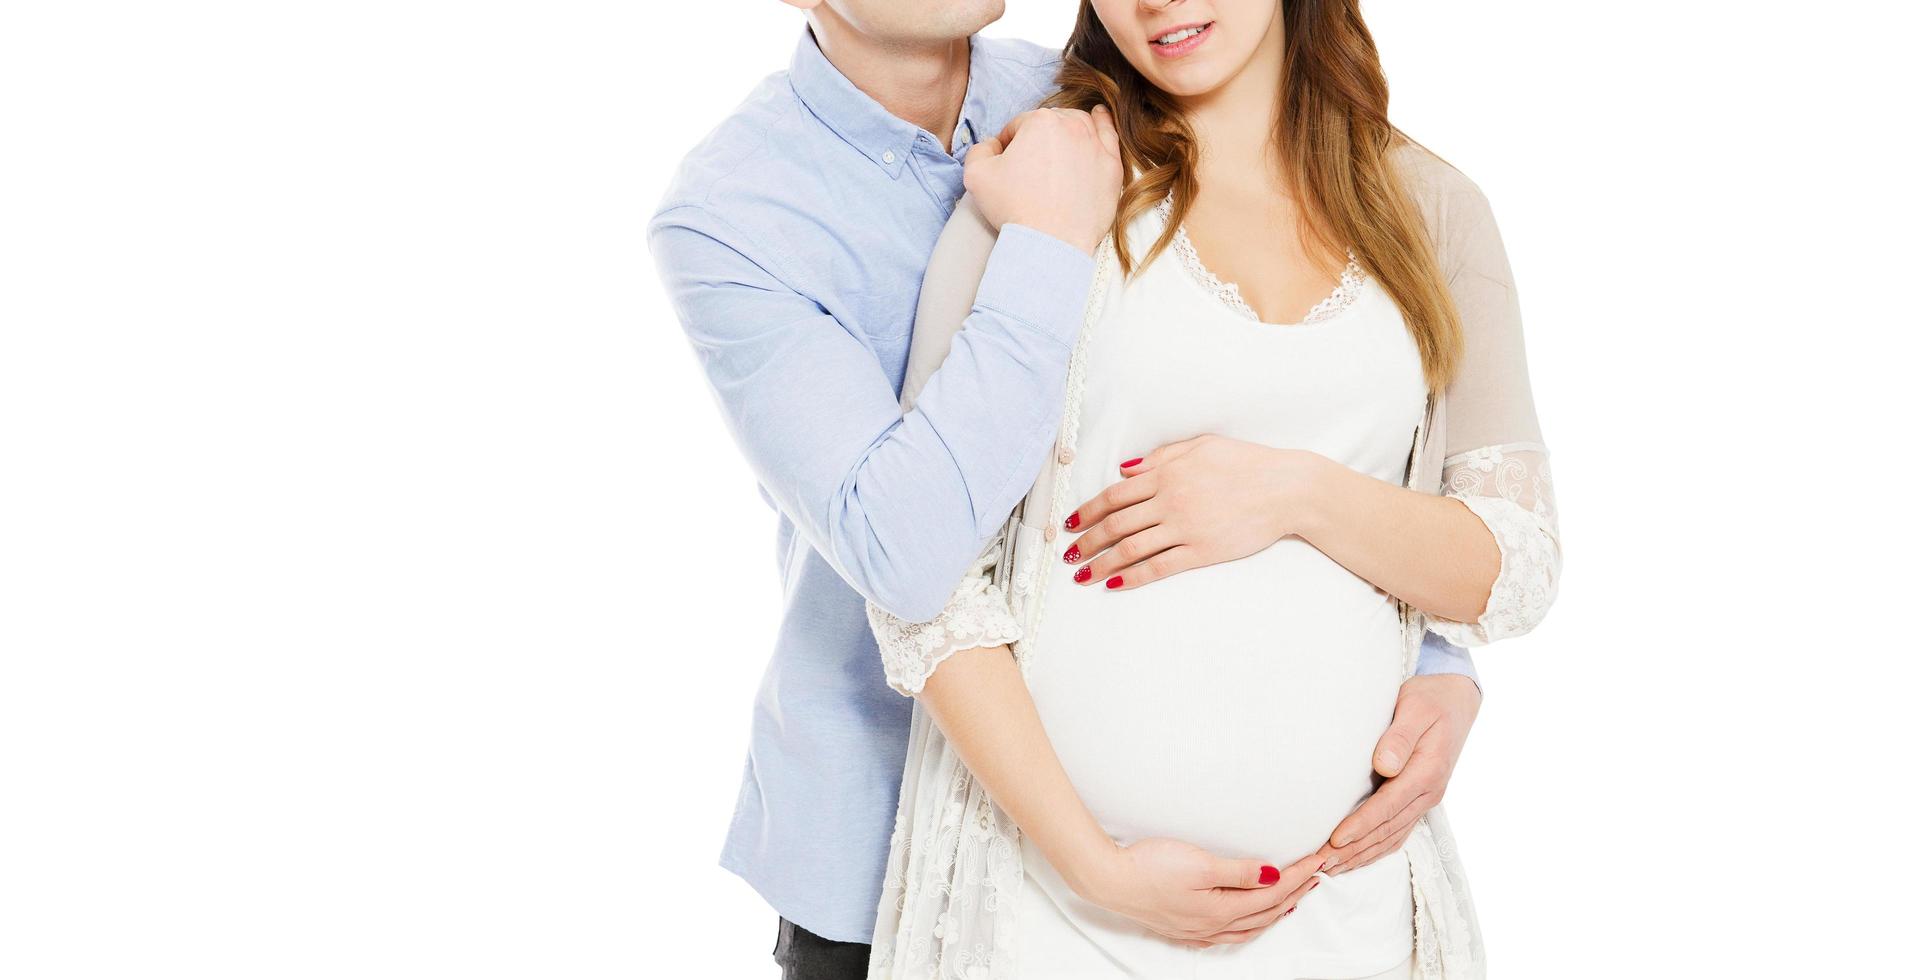 coppia in attesa di un bambino nato - immagine ritagliata foto